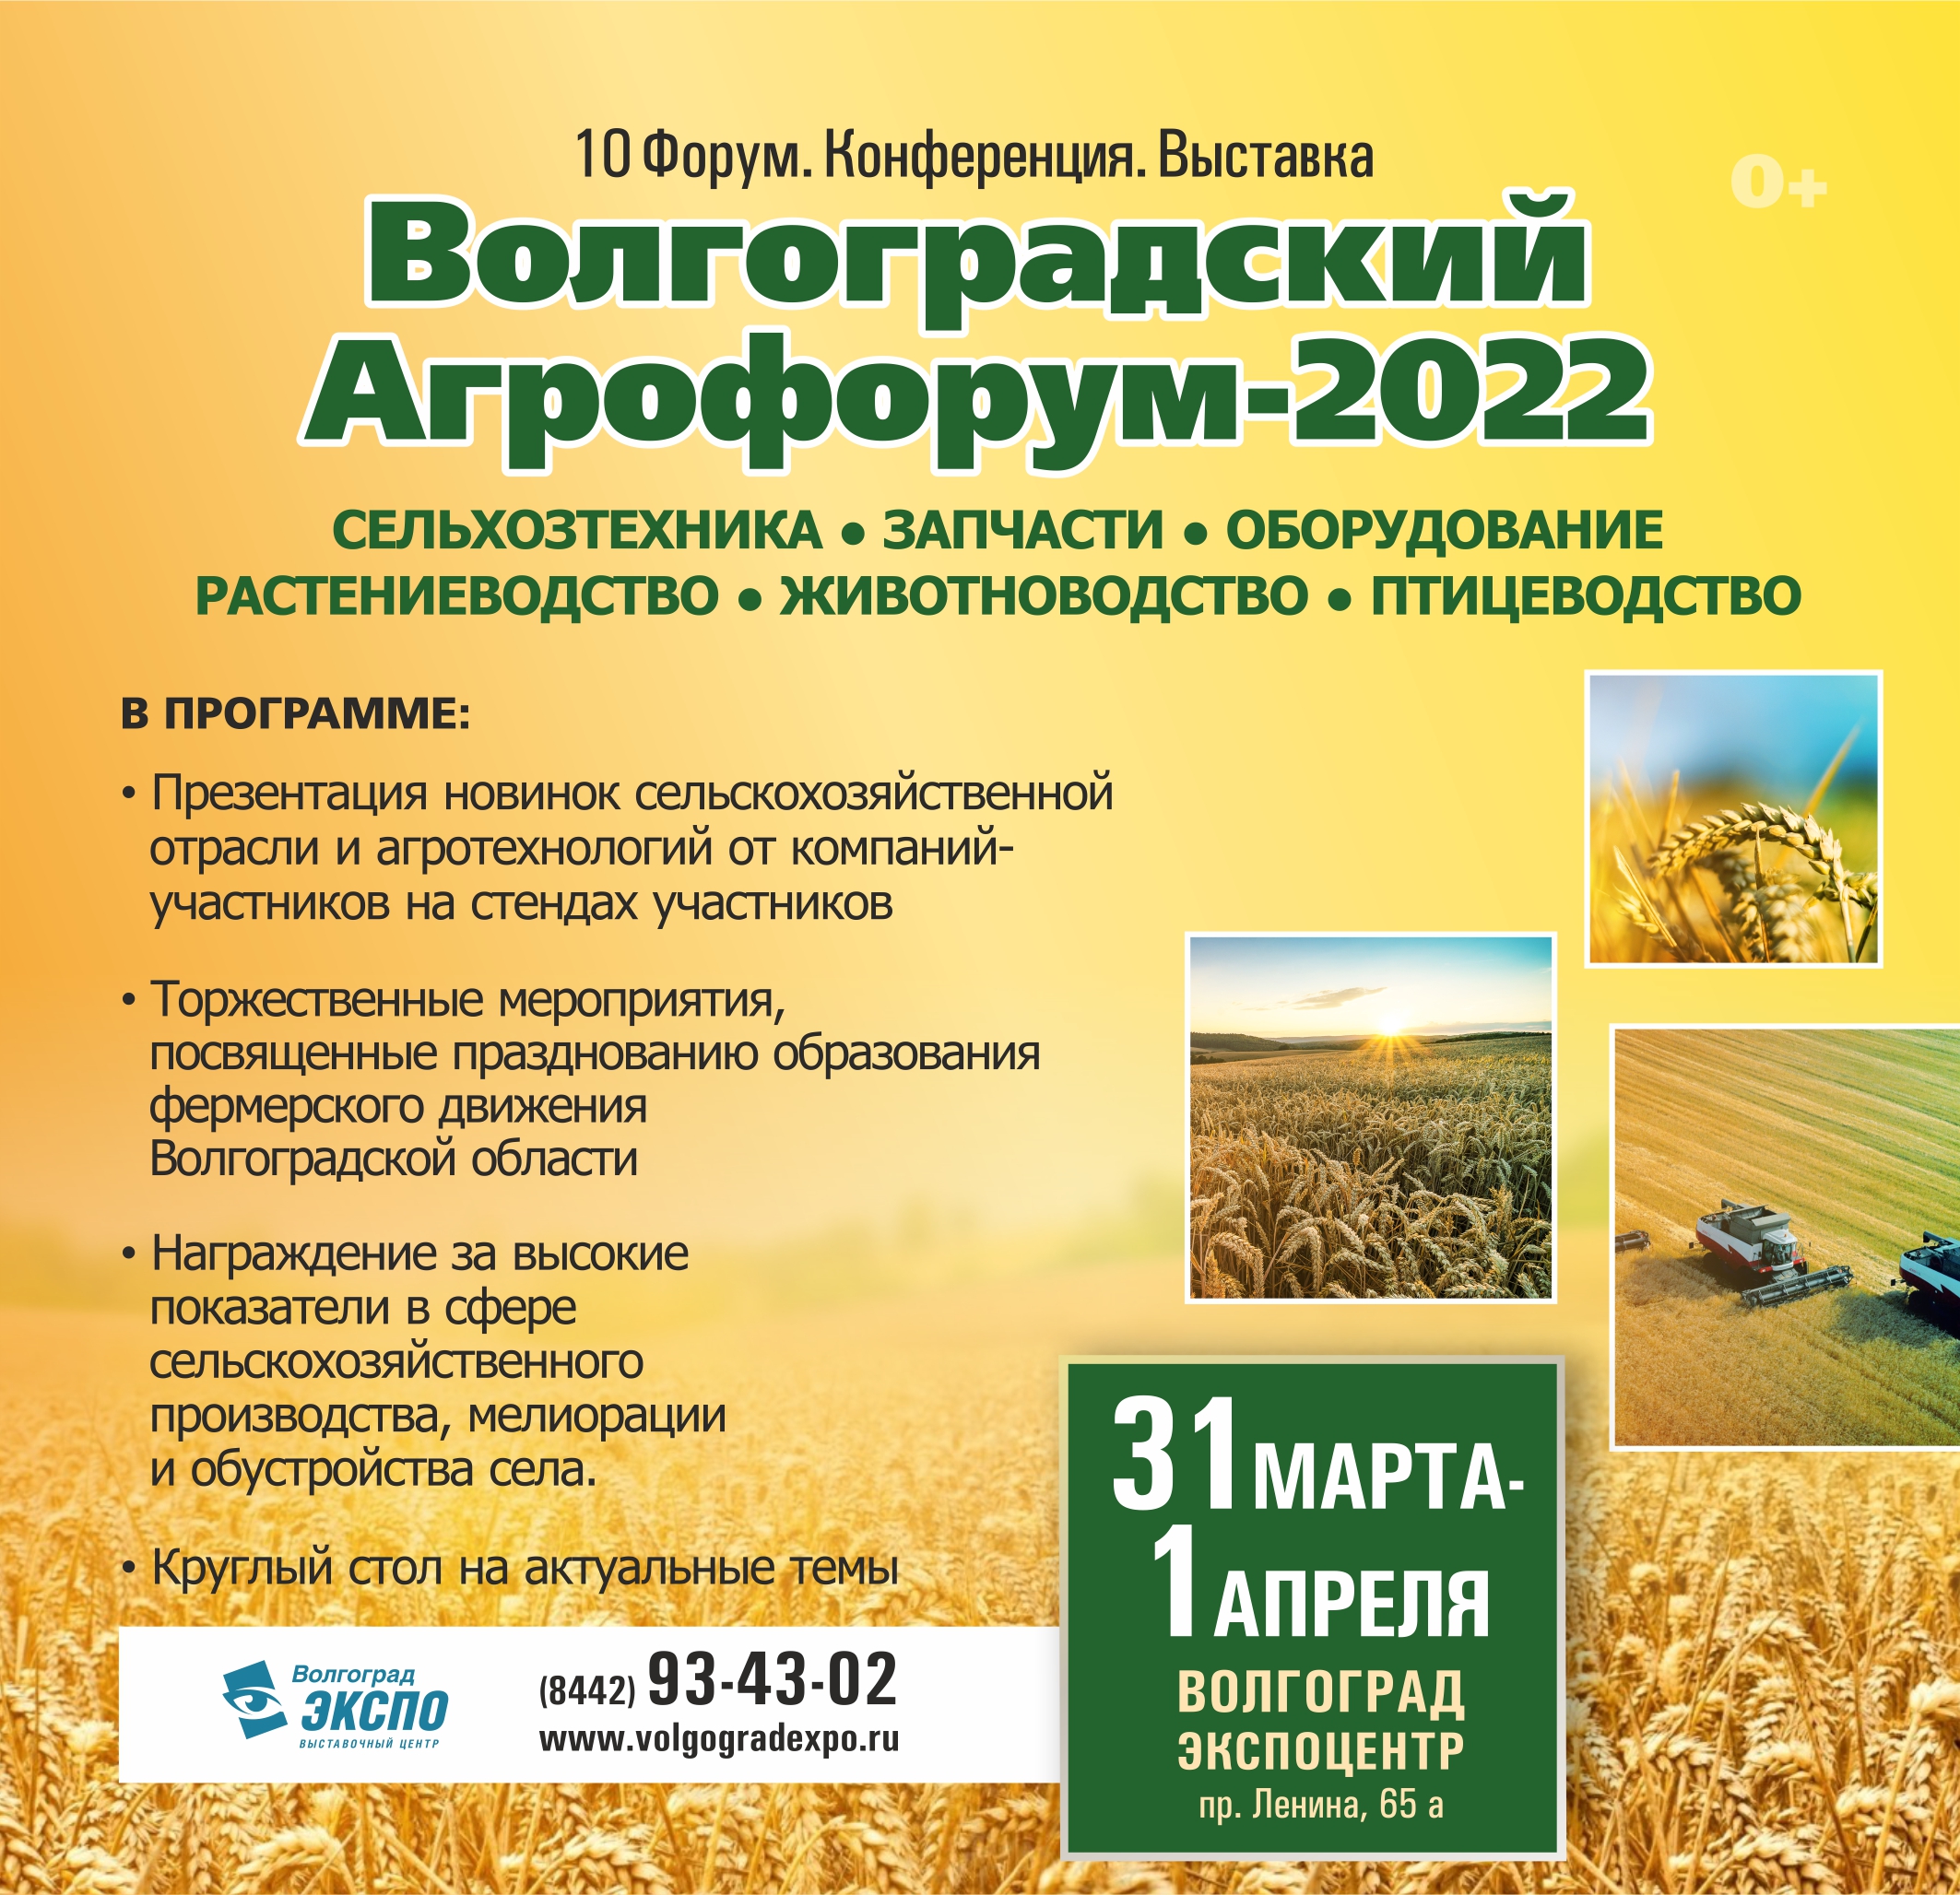 Волгоградский агрофорум 2022, Волгоград, 31.03-01.04.2022